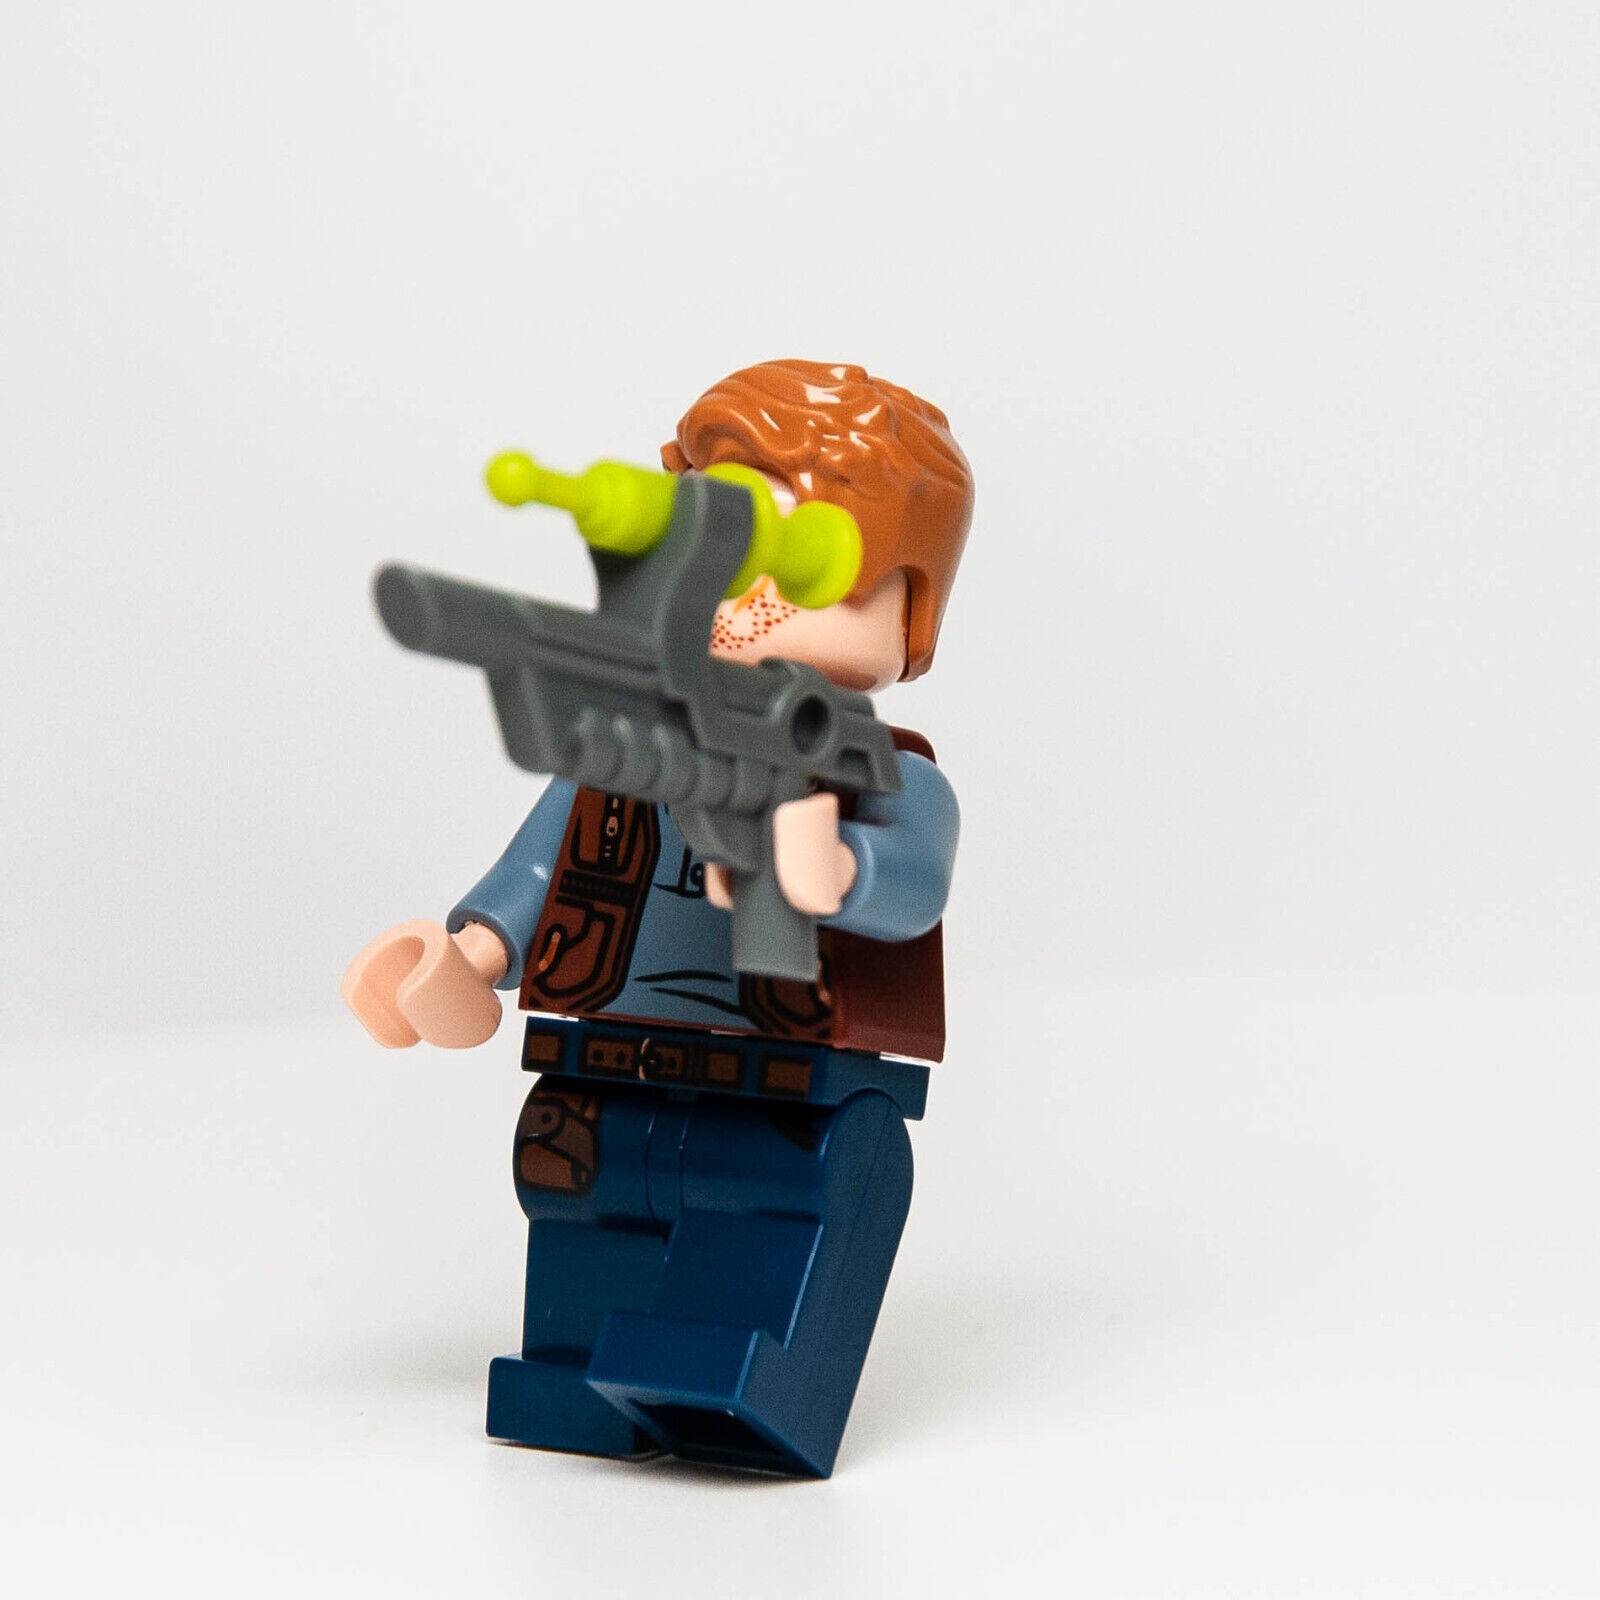 NEW LEGO Jurassic World Minifigure - Owen Grady w/ Tranquilizer (jw023)